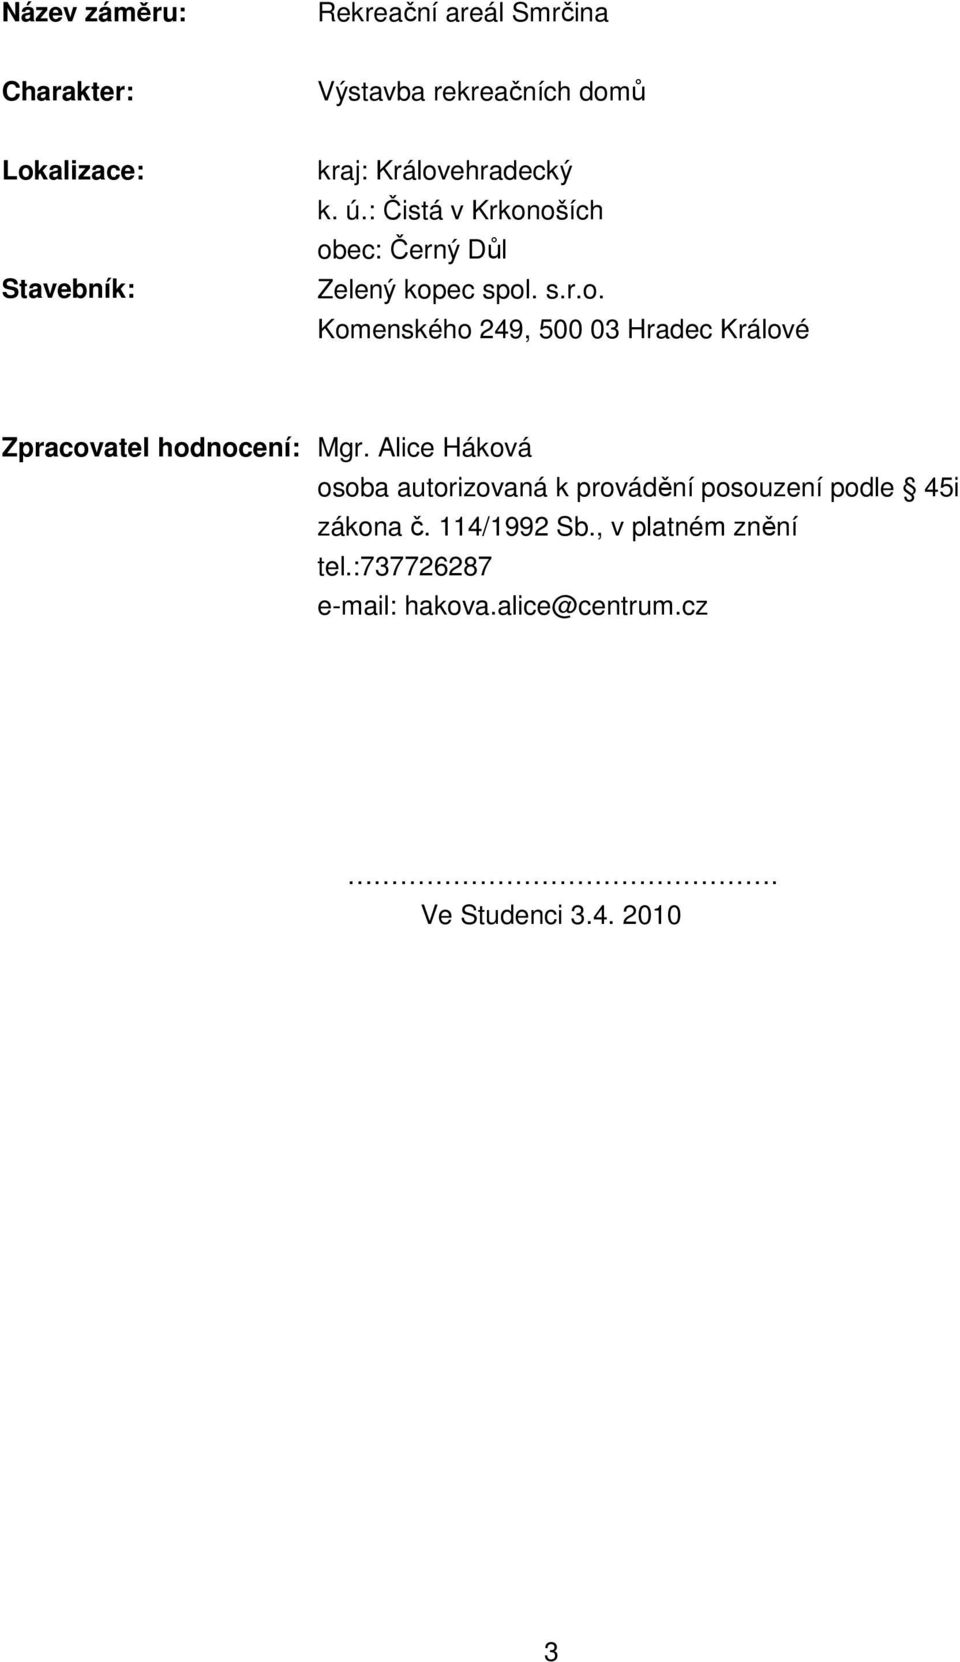 Alice Háková osoba autorizovaná k provádění posouzení podle 45i zákona č. 114/1992 Sb., v platném znění tel.